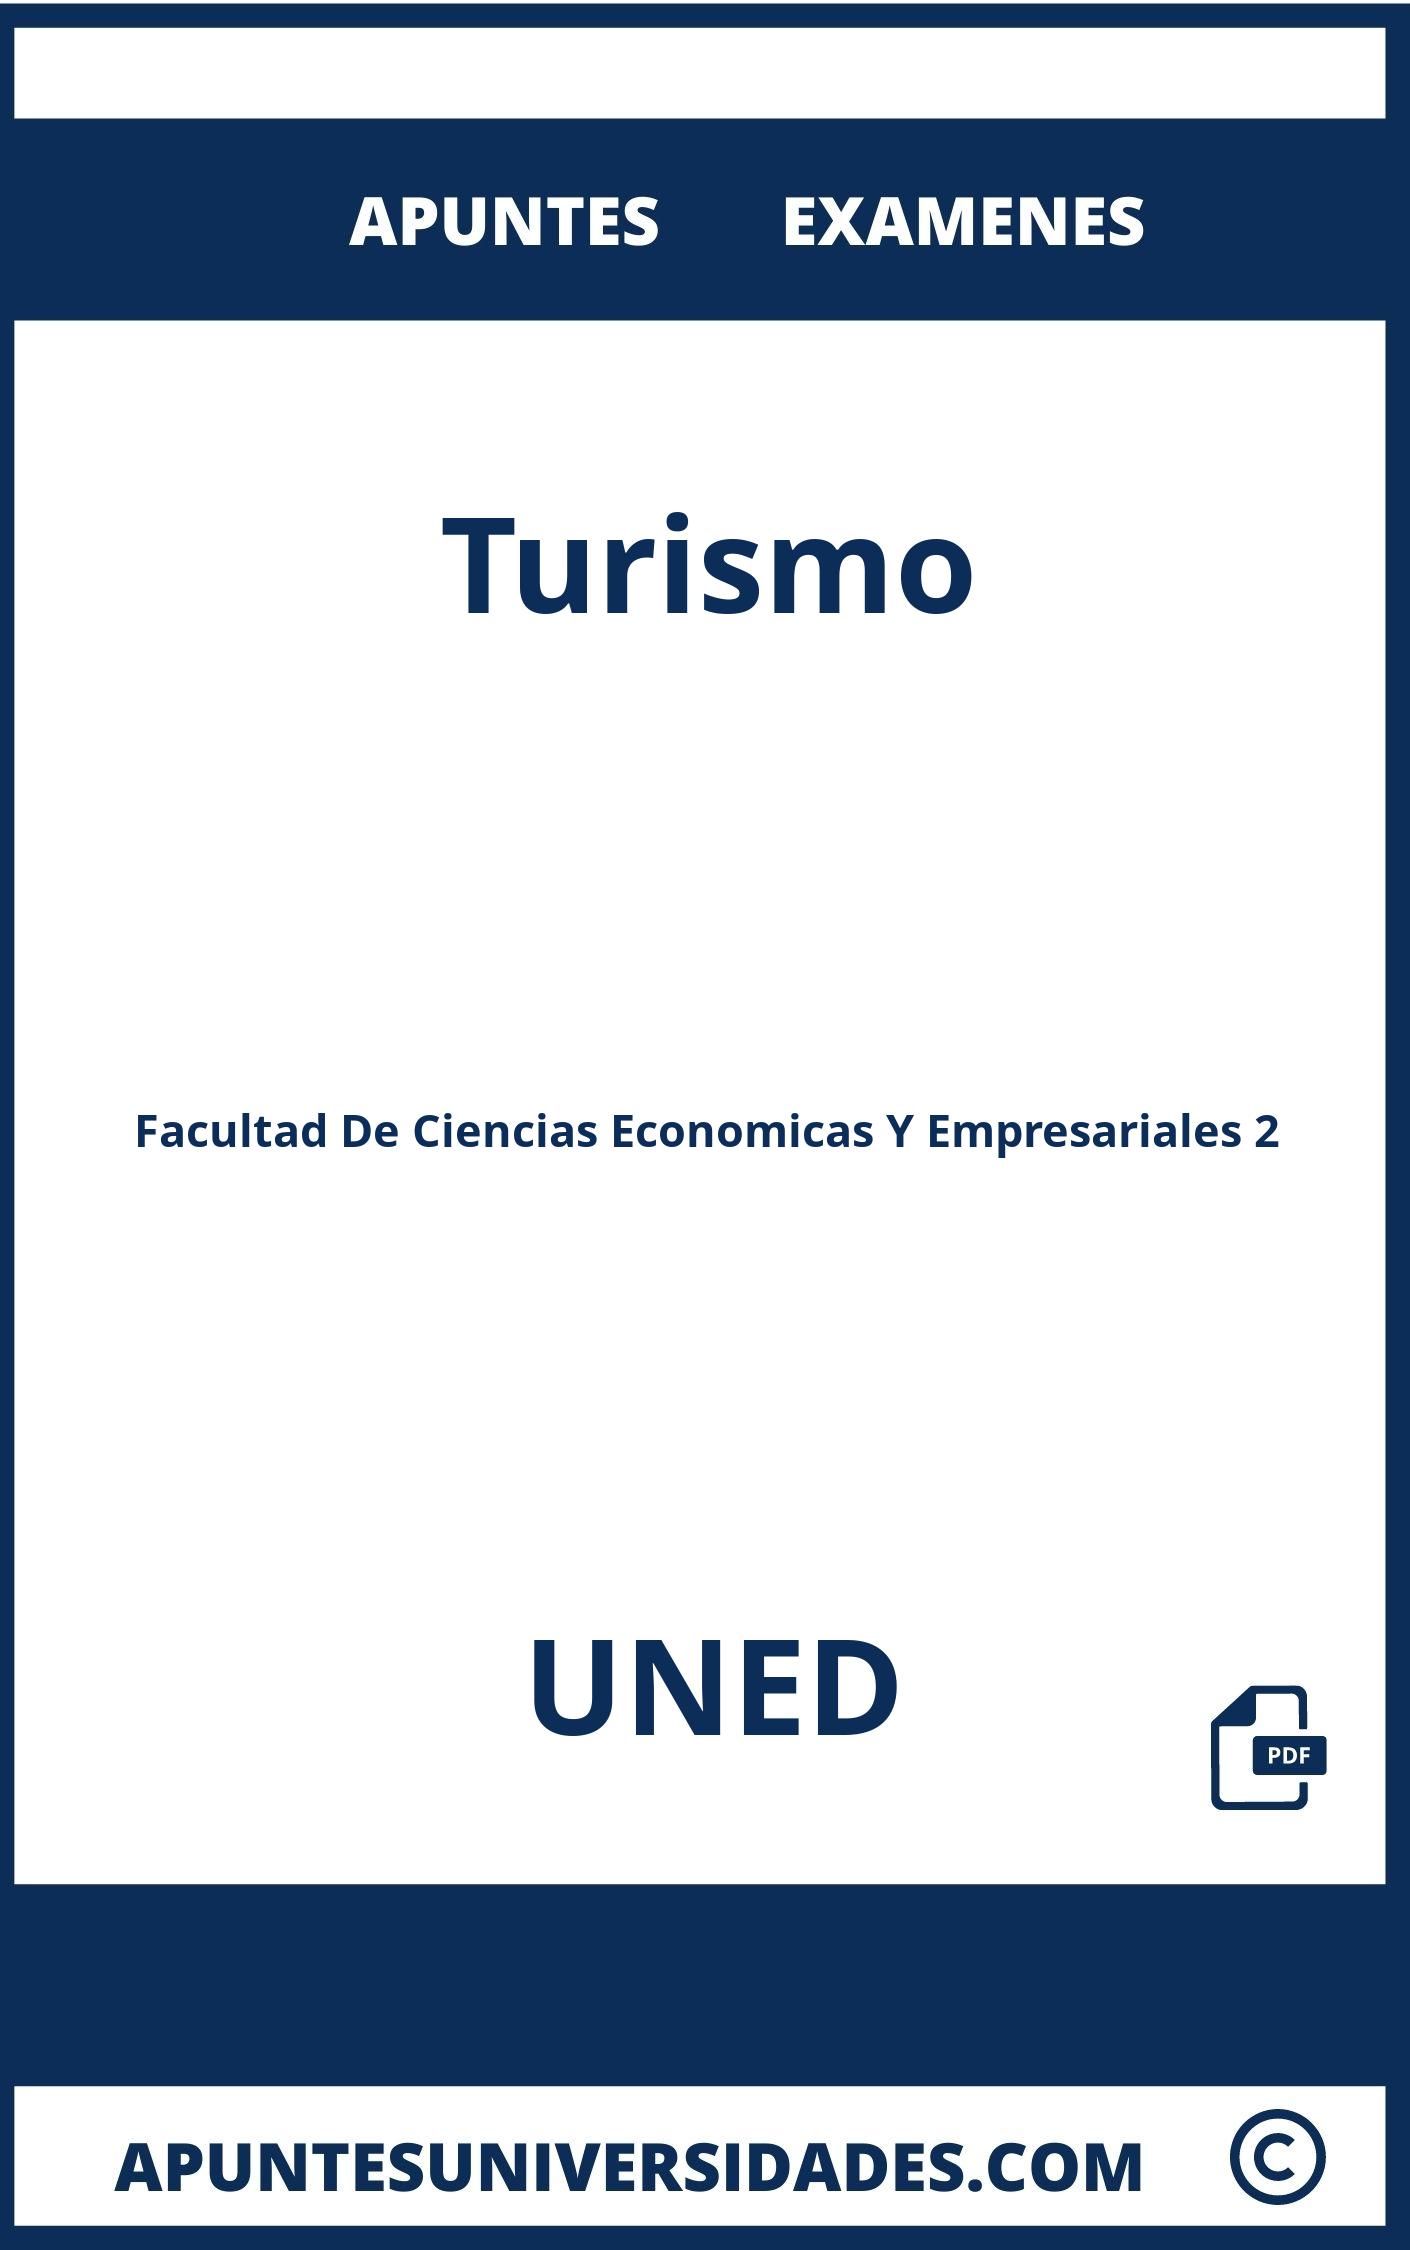 Apuntes y Examenes de Turismo UNED